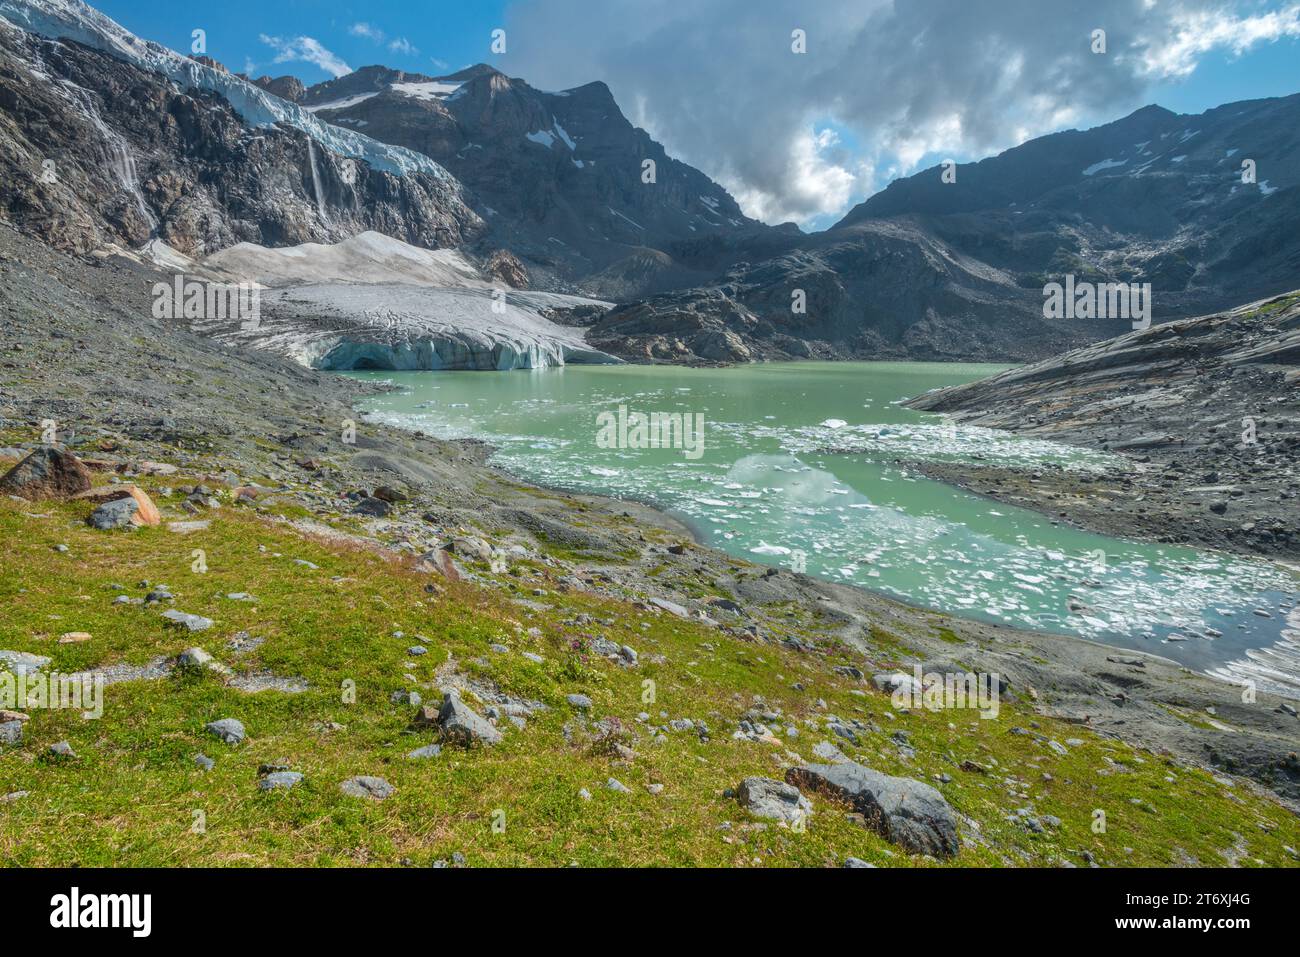 Glaciar alpino en retroceso, glaciar circo con cascada que se rompe en el lago glacial, rodeado de prado verde alfombrado con flores silvestres de verano Foto de stock